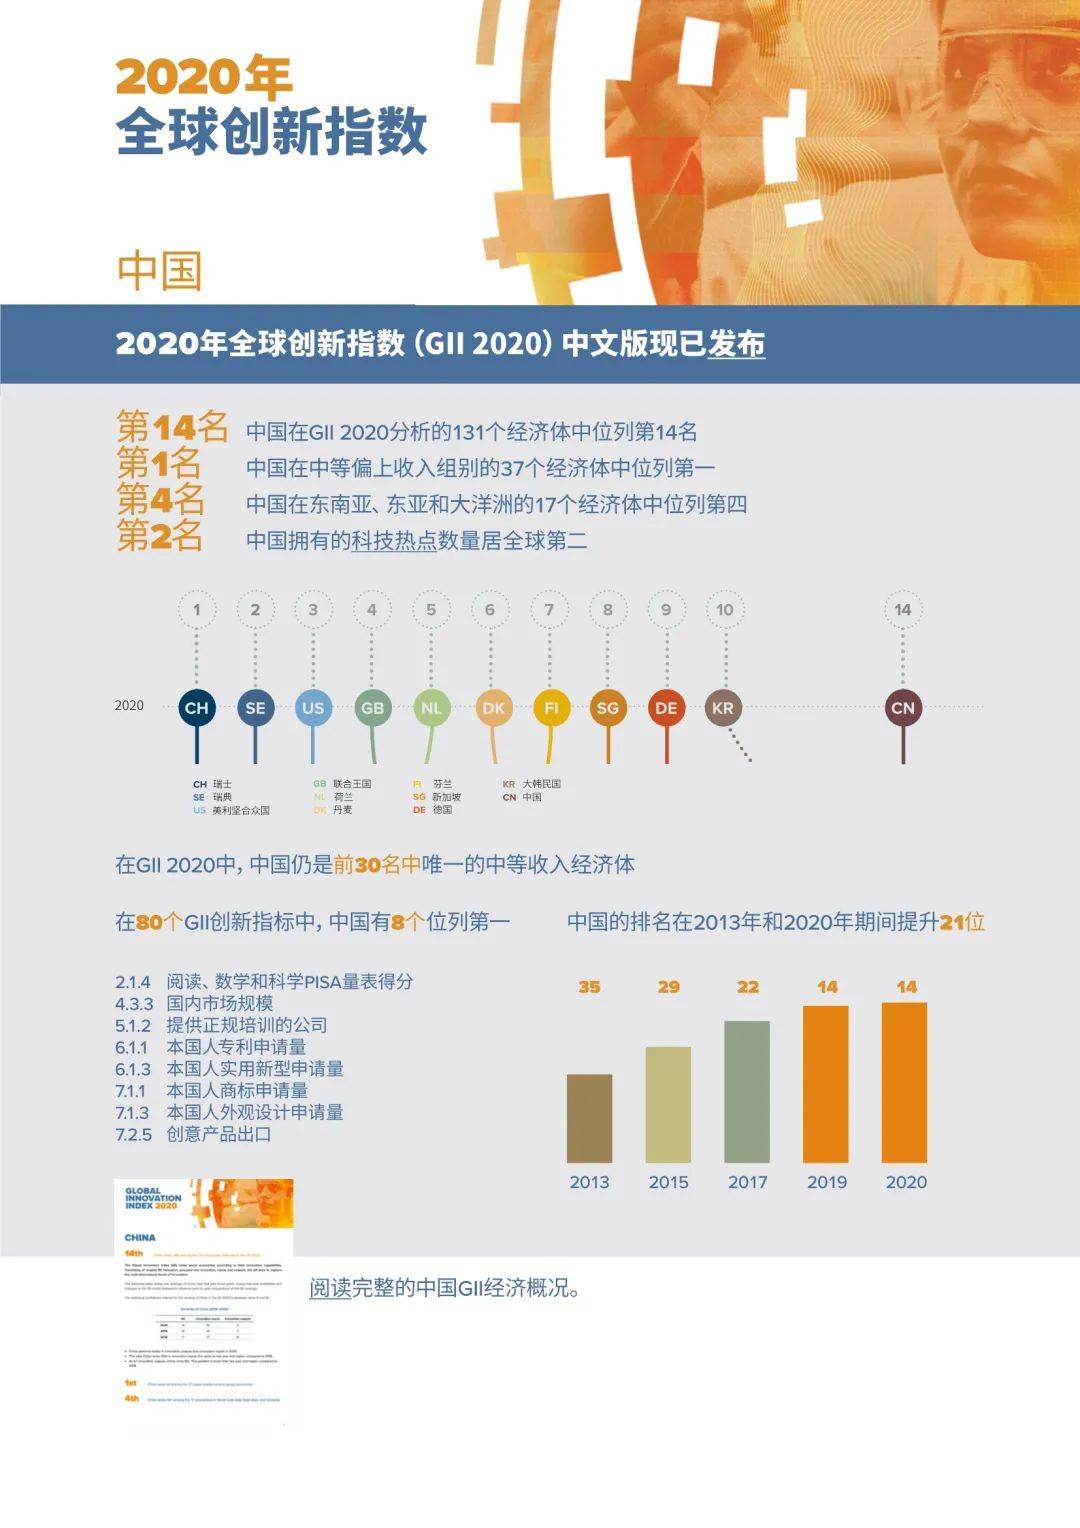 世界知识产权组织：《2022年全球创新指数》报告 中国排名升至第11位 | 互联网数据资讯网-199IT | 中文互联网数据研究资讯中心-199IT